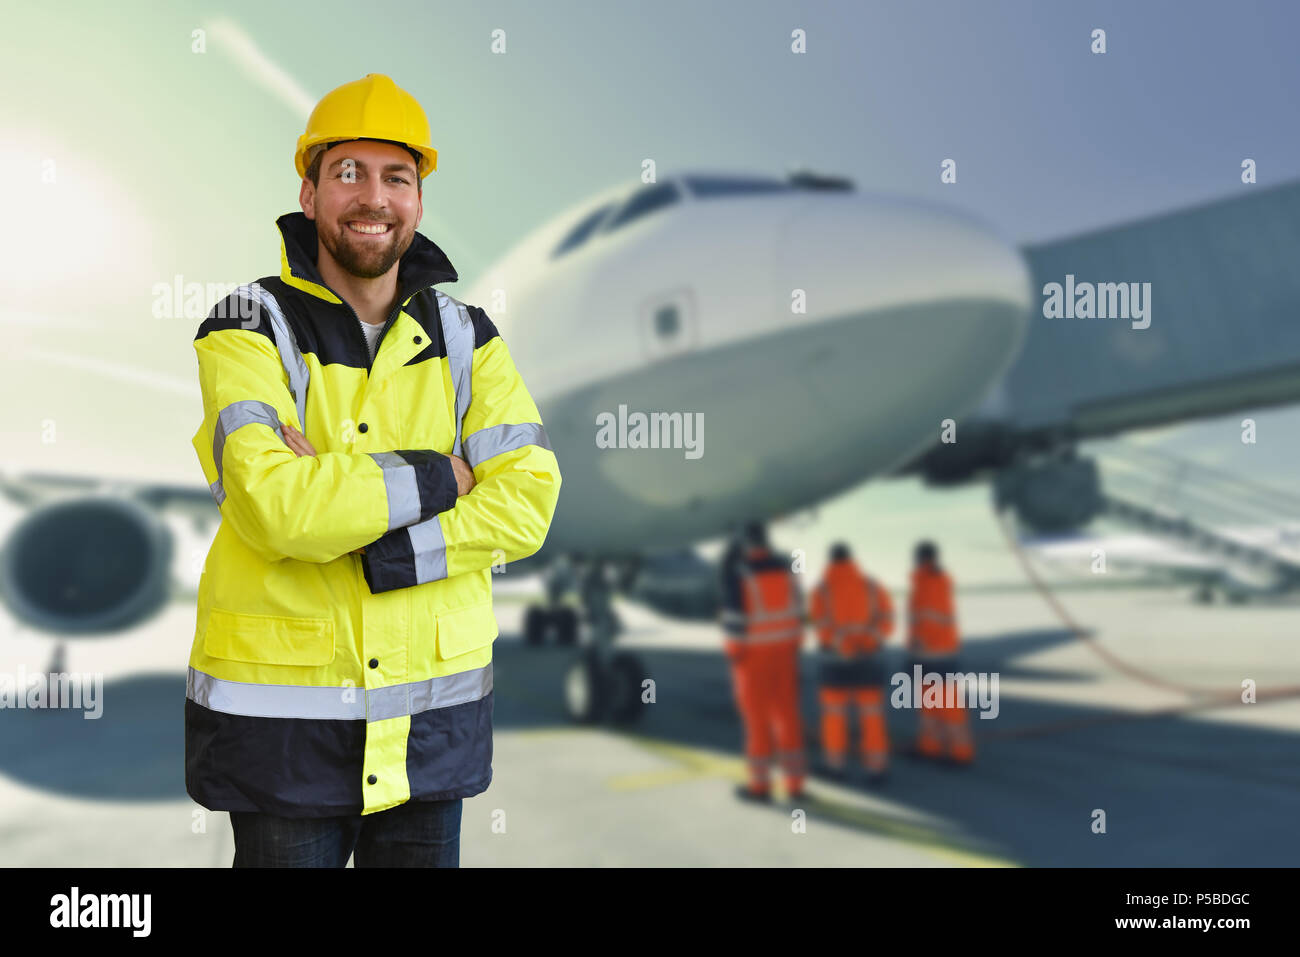 Portrait von lächelnden Arbeiter von bodenpersonal am Flughafen - Handhabung und Sicherheit die Kontrolle über ein Flugzeug Stockfoto